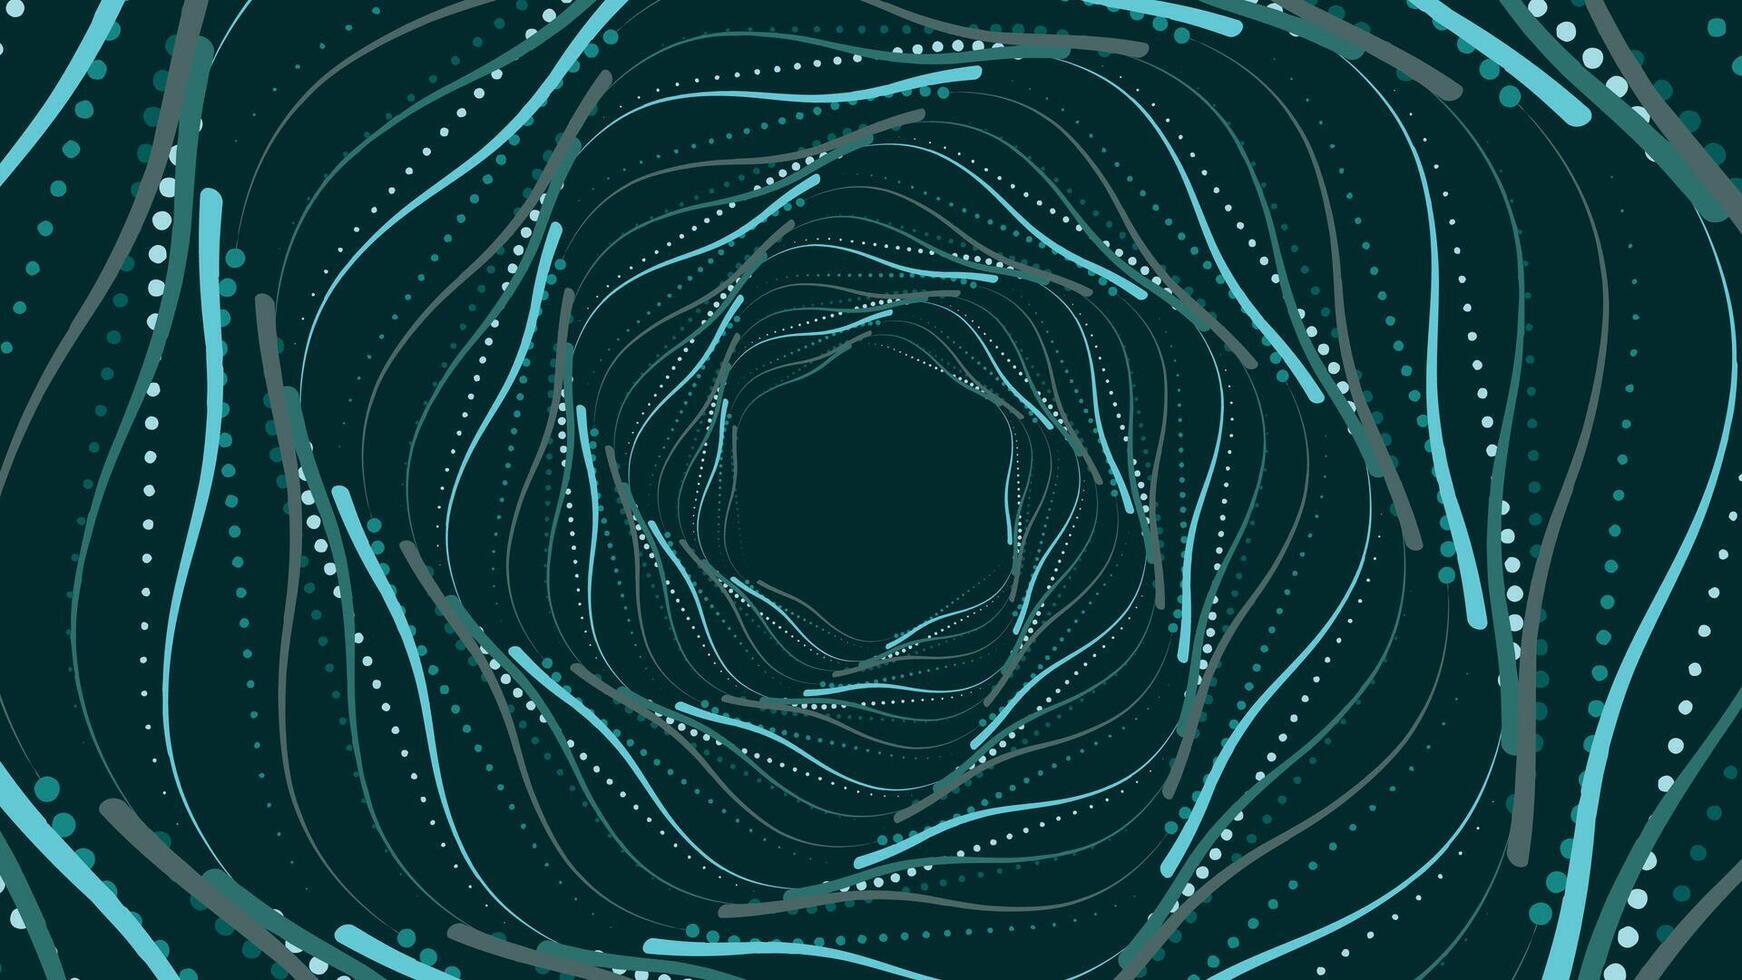 Abstract spiral dotted urgency round flower dark green background. vector